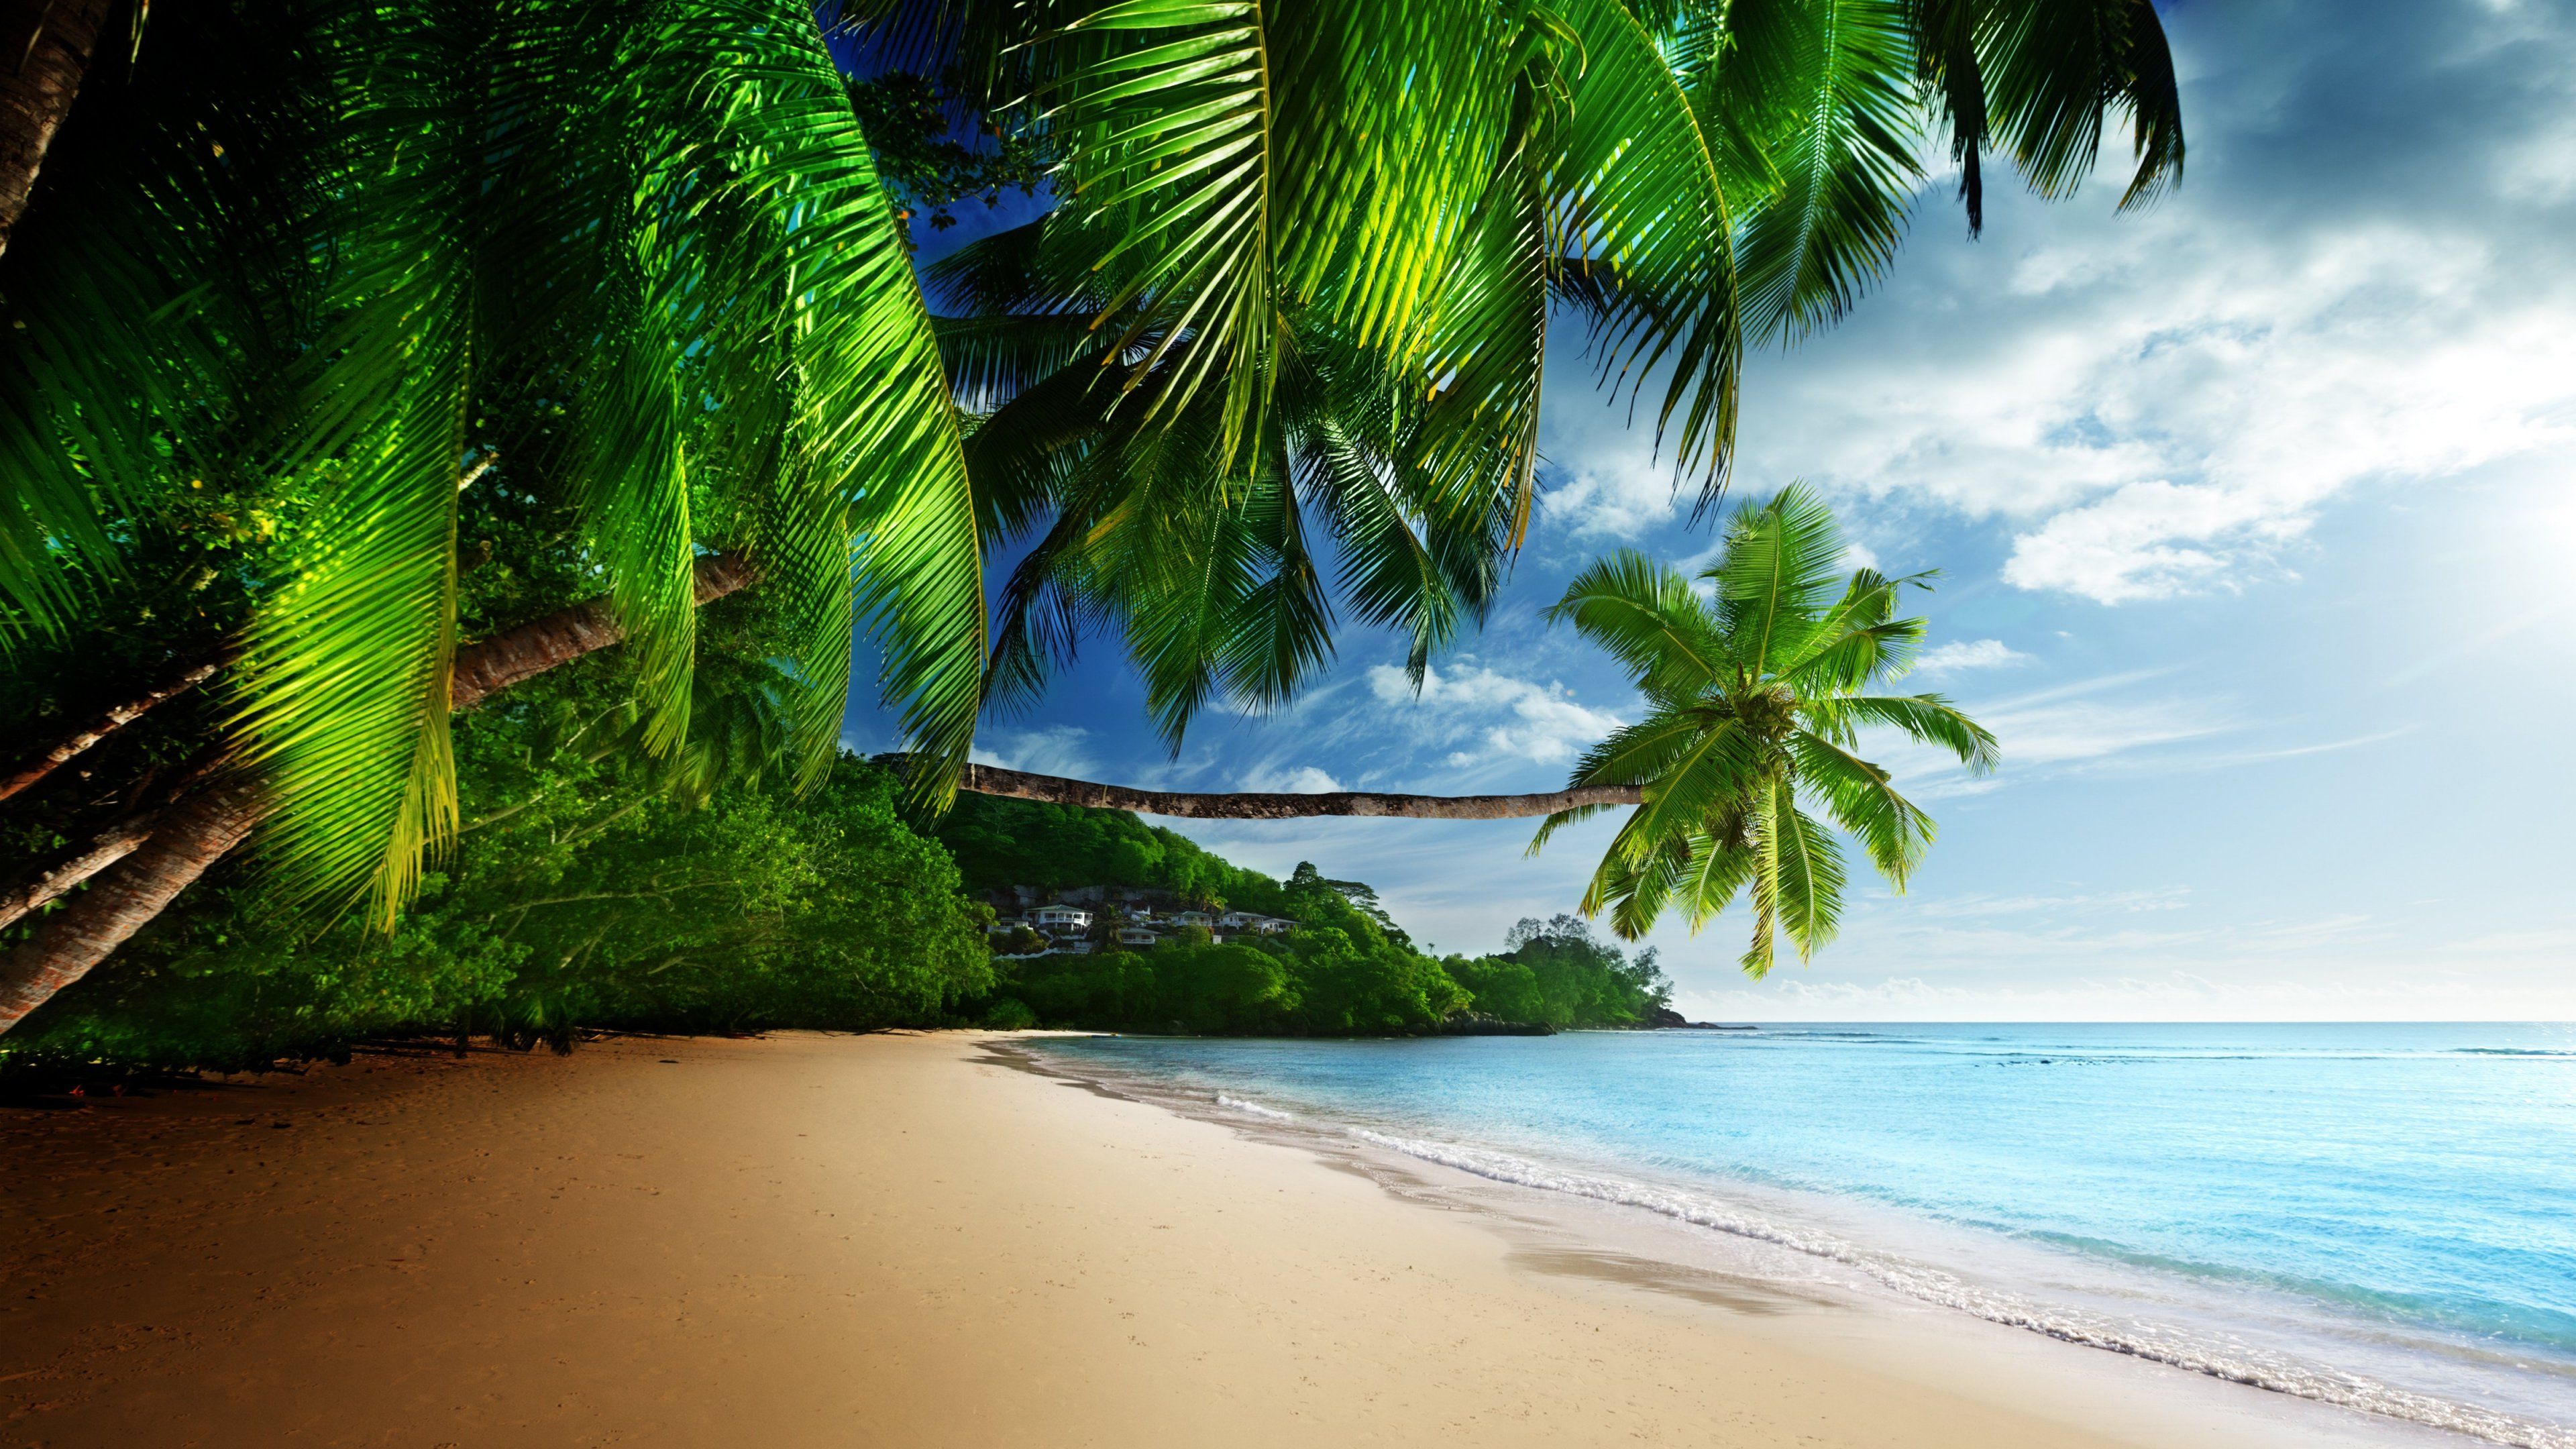 Beach Backgrounds For Desktop